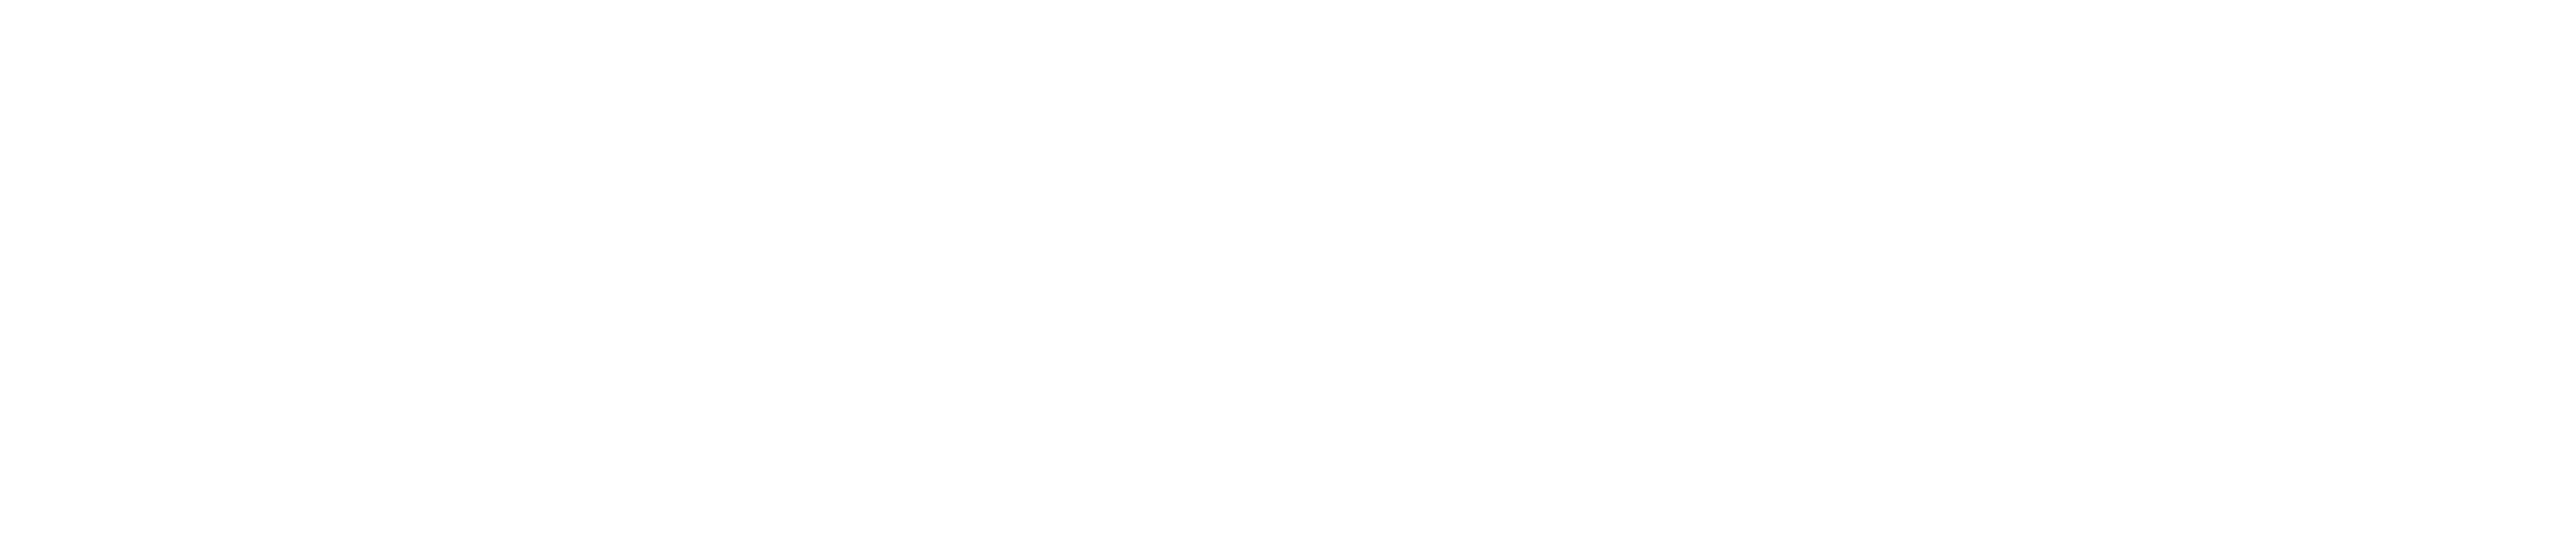 logo 2-white-thin